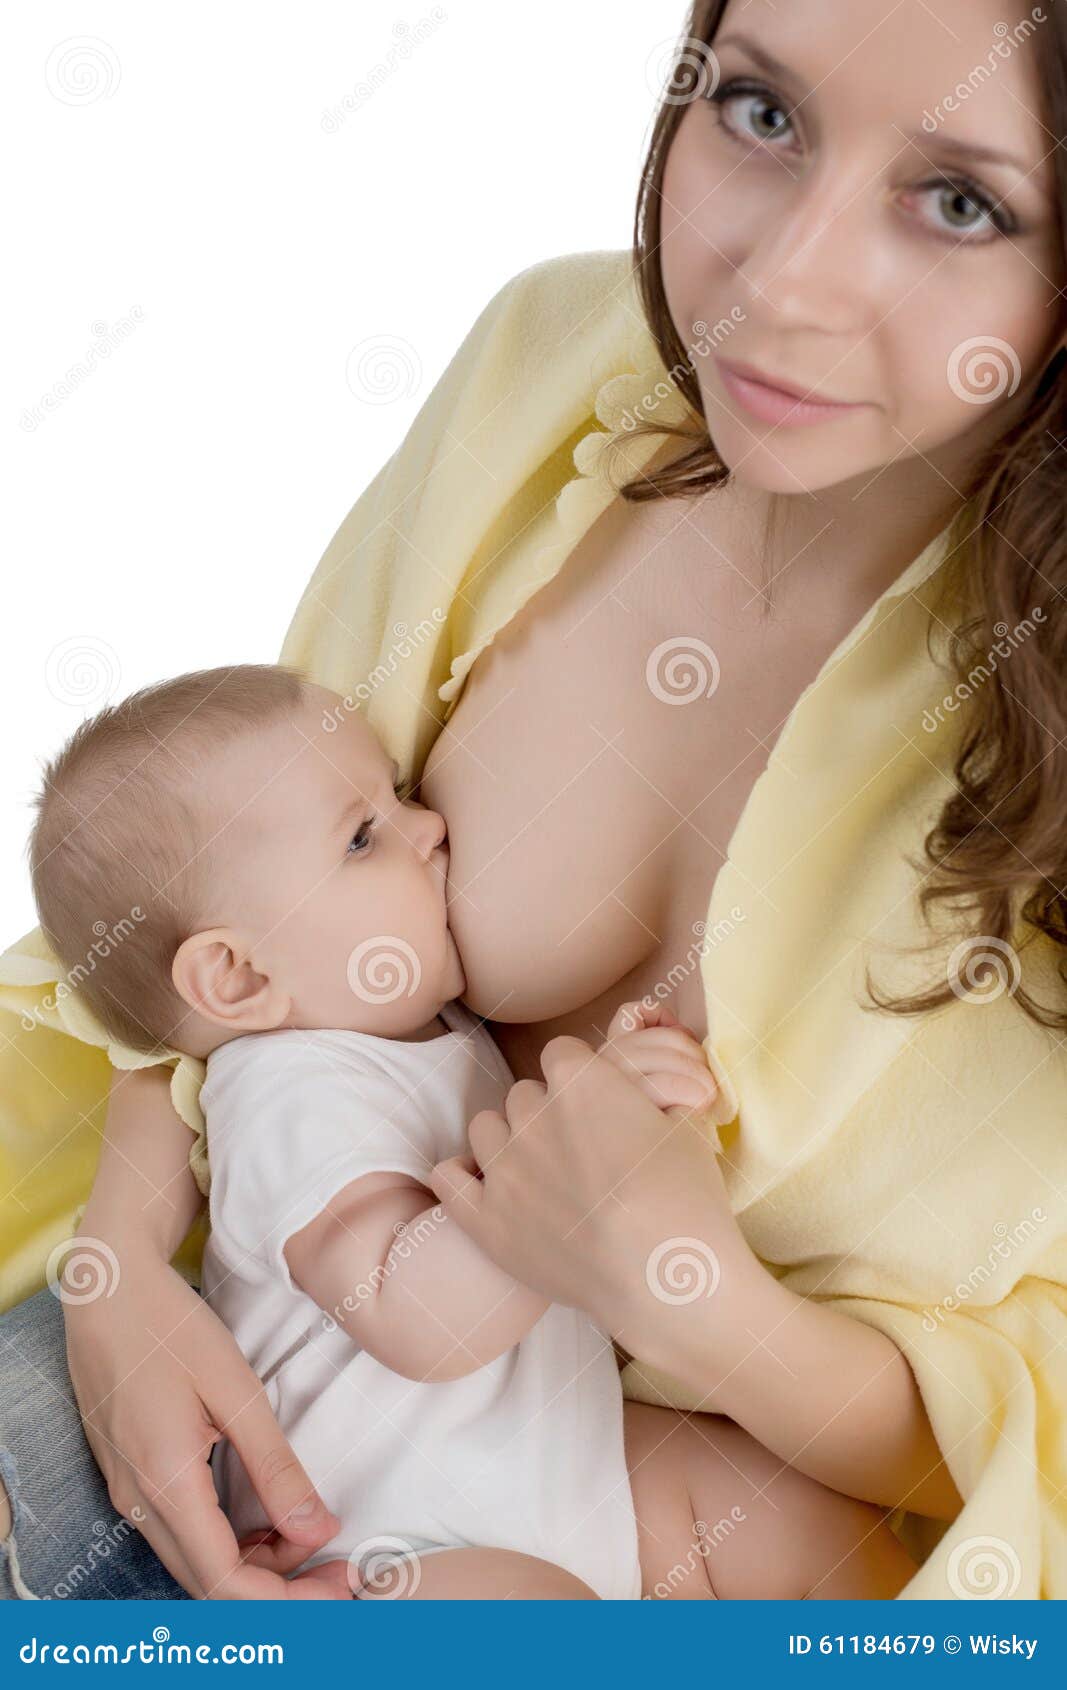 кормящая мам застудила грудь фото 23